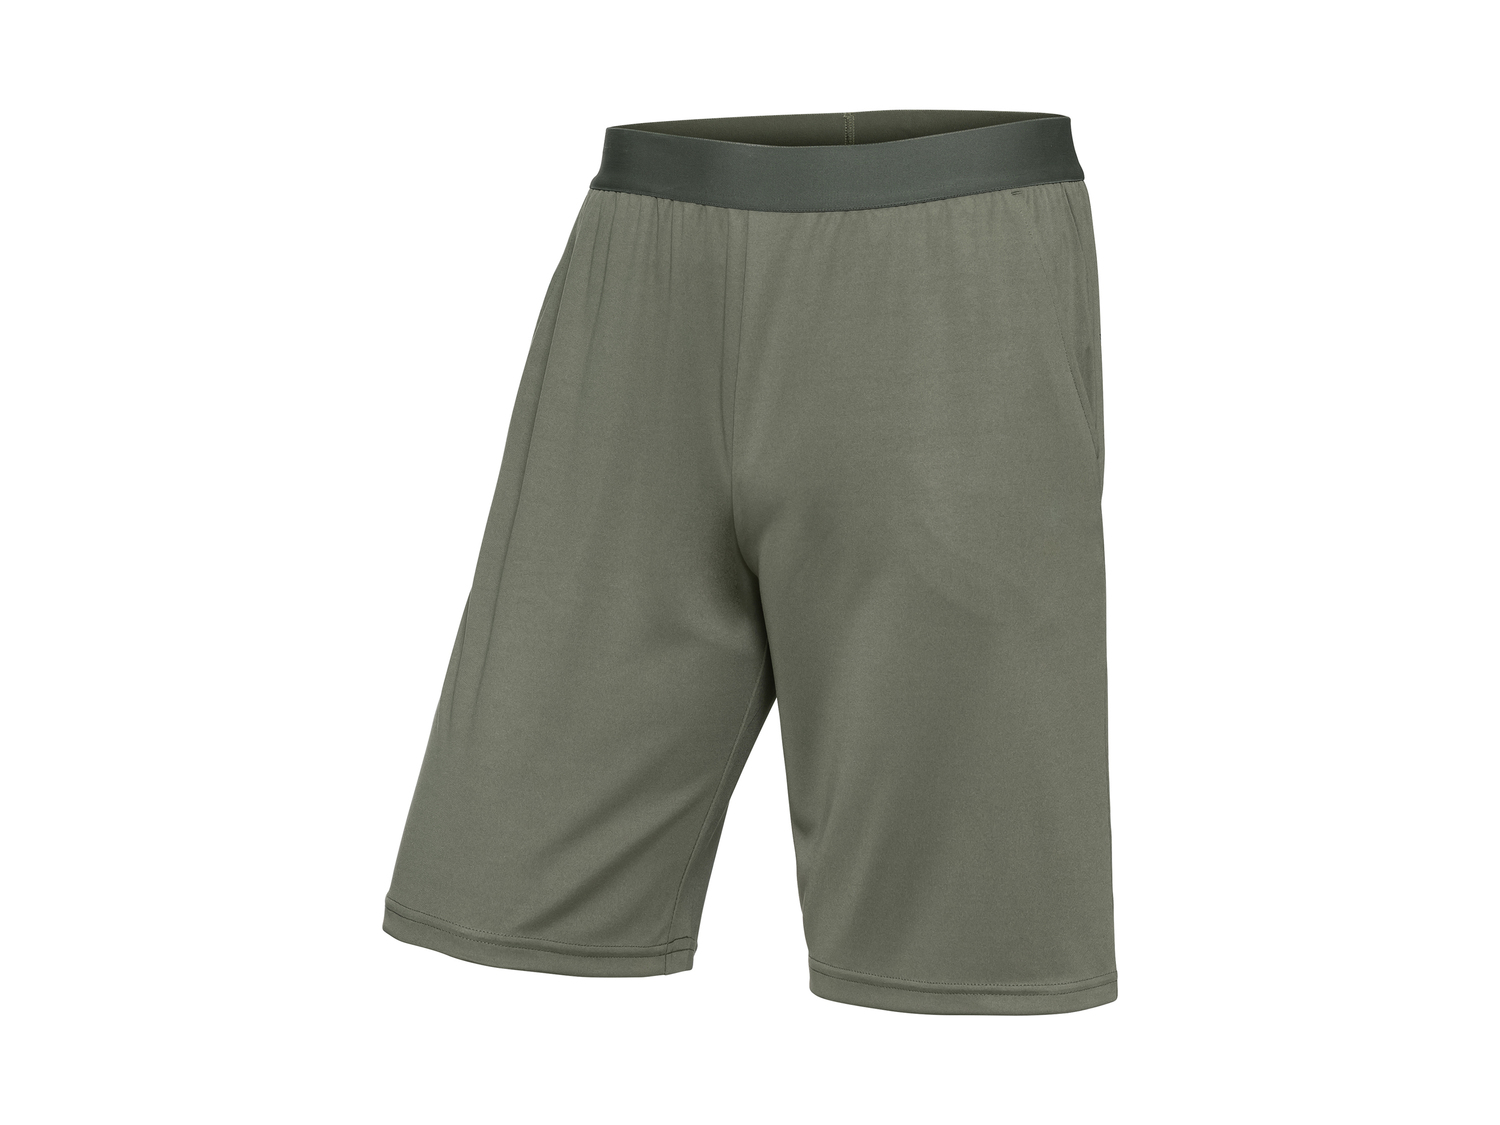 Shorts sportivi da uomo Crivit, prezzo 4.99 &#8364; 
Misure: S-XL
Taglie disponibili

Caratteristiche

- ...